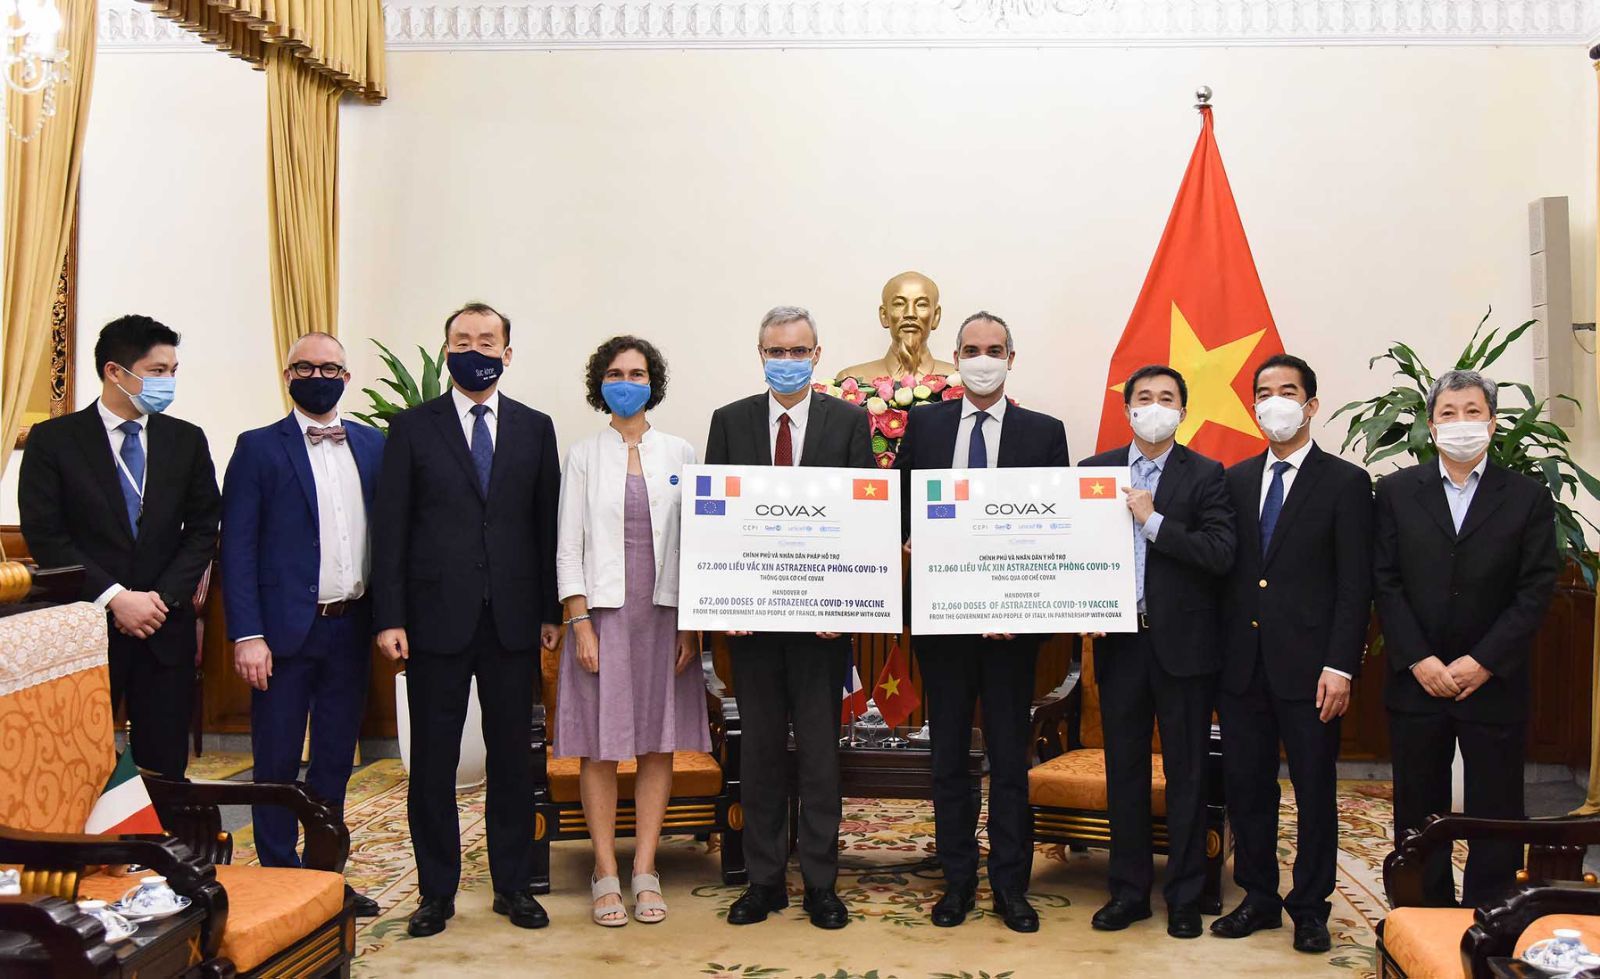 Chính phủ Pháp và Italy tài trợ cho Việt Nam 1,5 triệu liều vắc xin AstraZeneca. (Nguồn ảnh: vietnamnet.vn) 